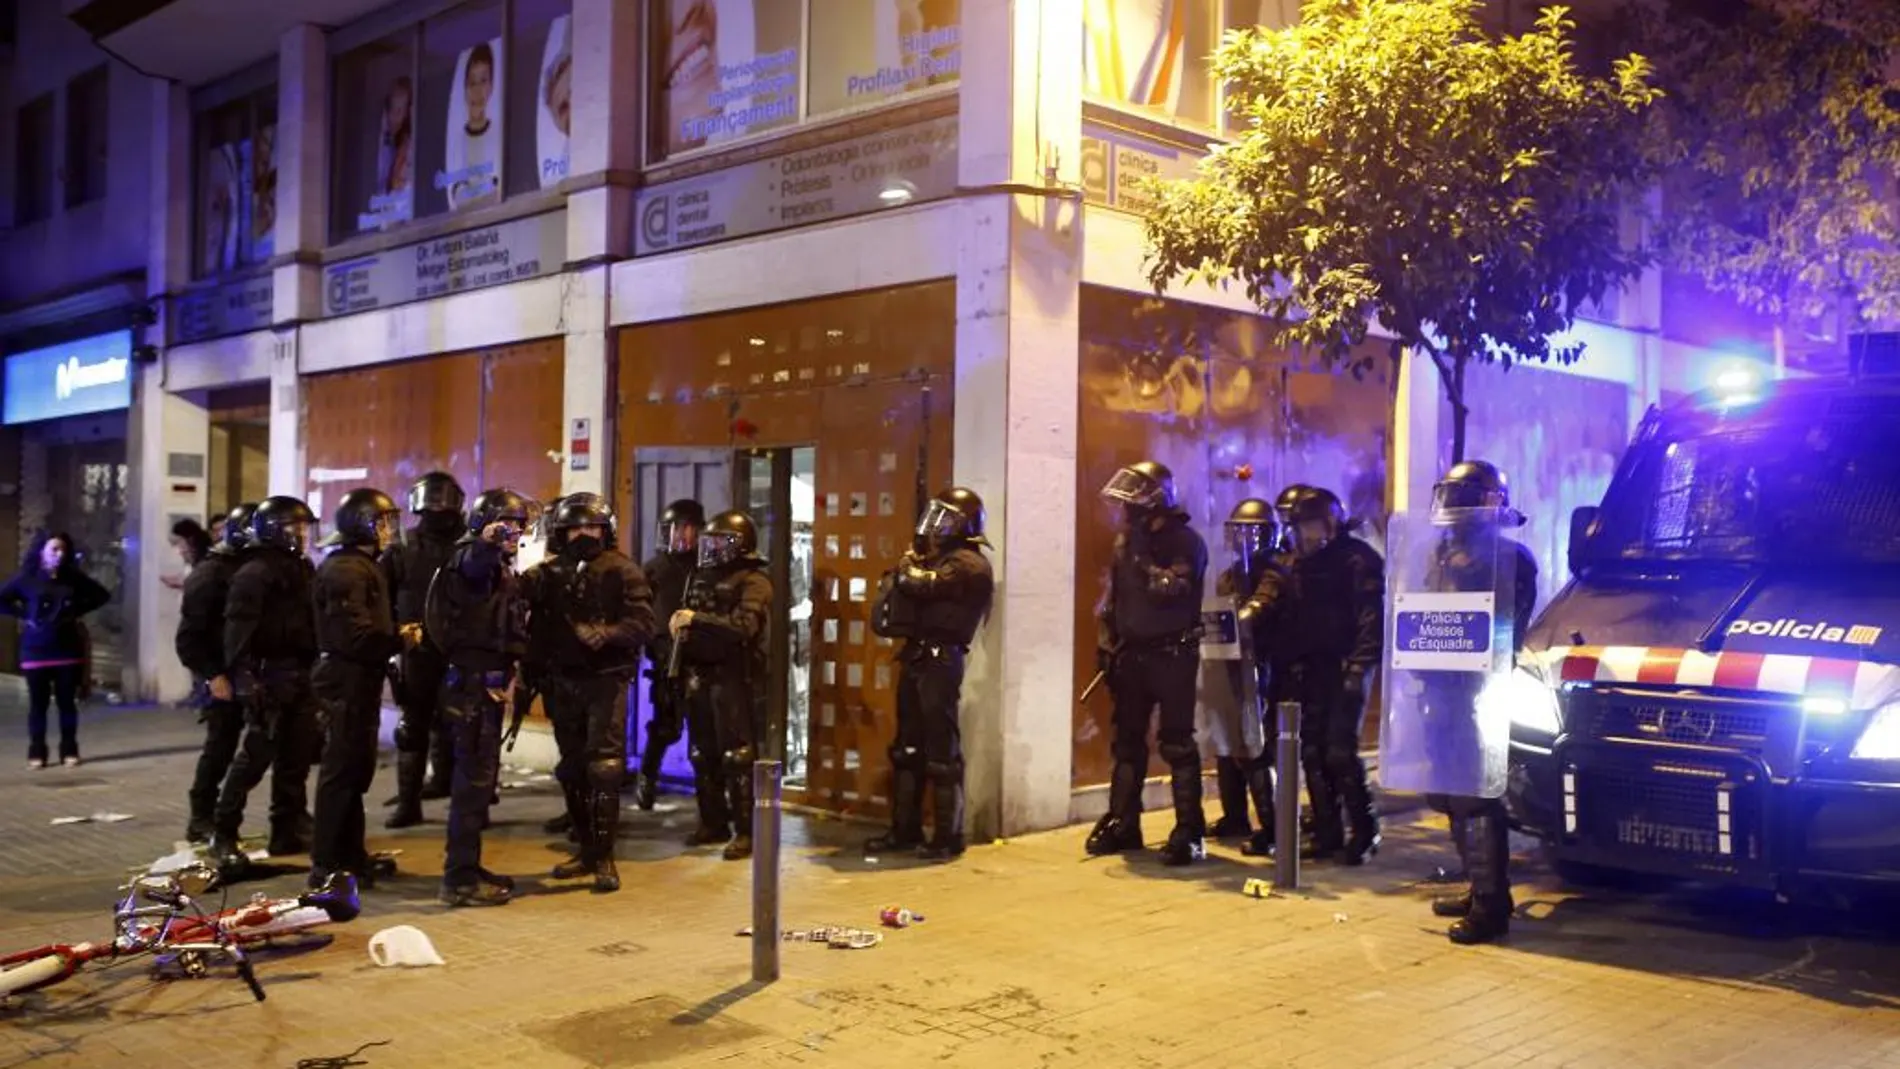 Varios antidisturbios junto al "banco okupado", esta noche en Barcelona, donde se ha vivido una nueva noche de disturbios en el barrio de Gràcia y donde se han reproducido los enfrentamientos entre jóvenes y fuerzas antidisturbios de los Mossos d'Esquadra.